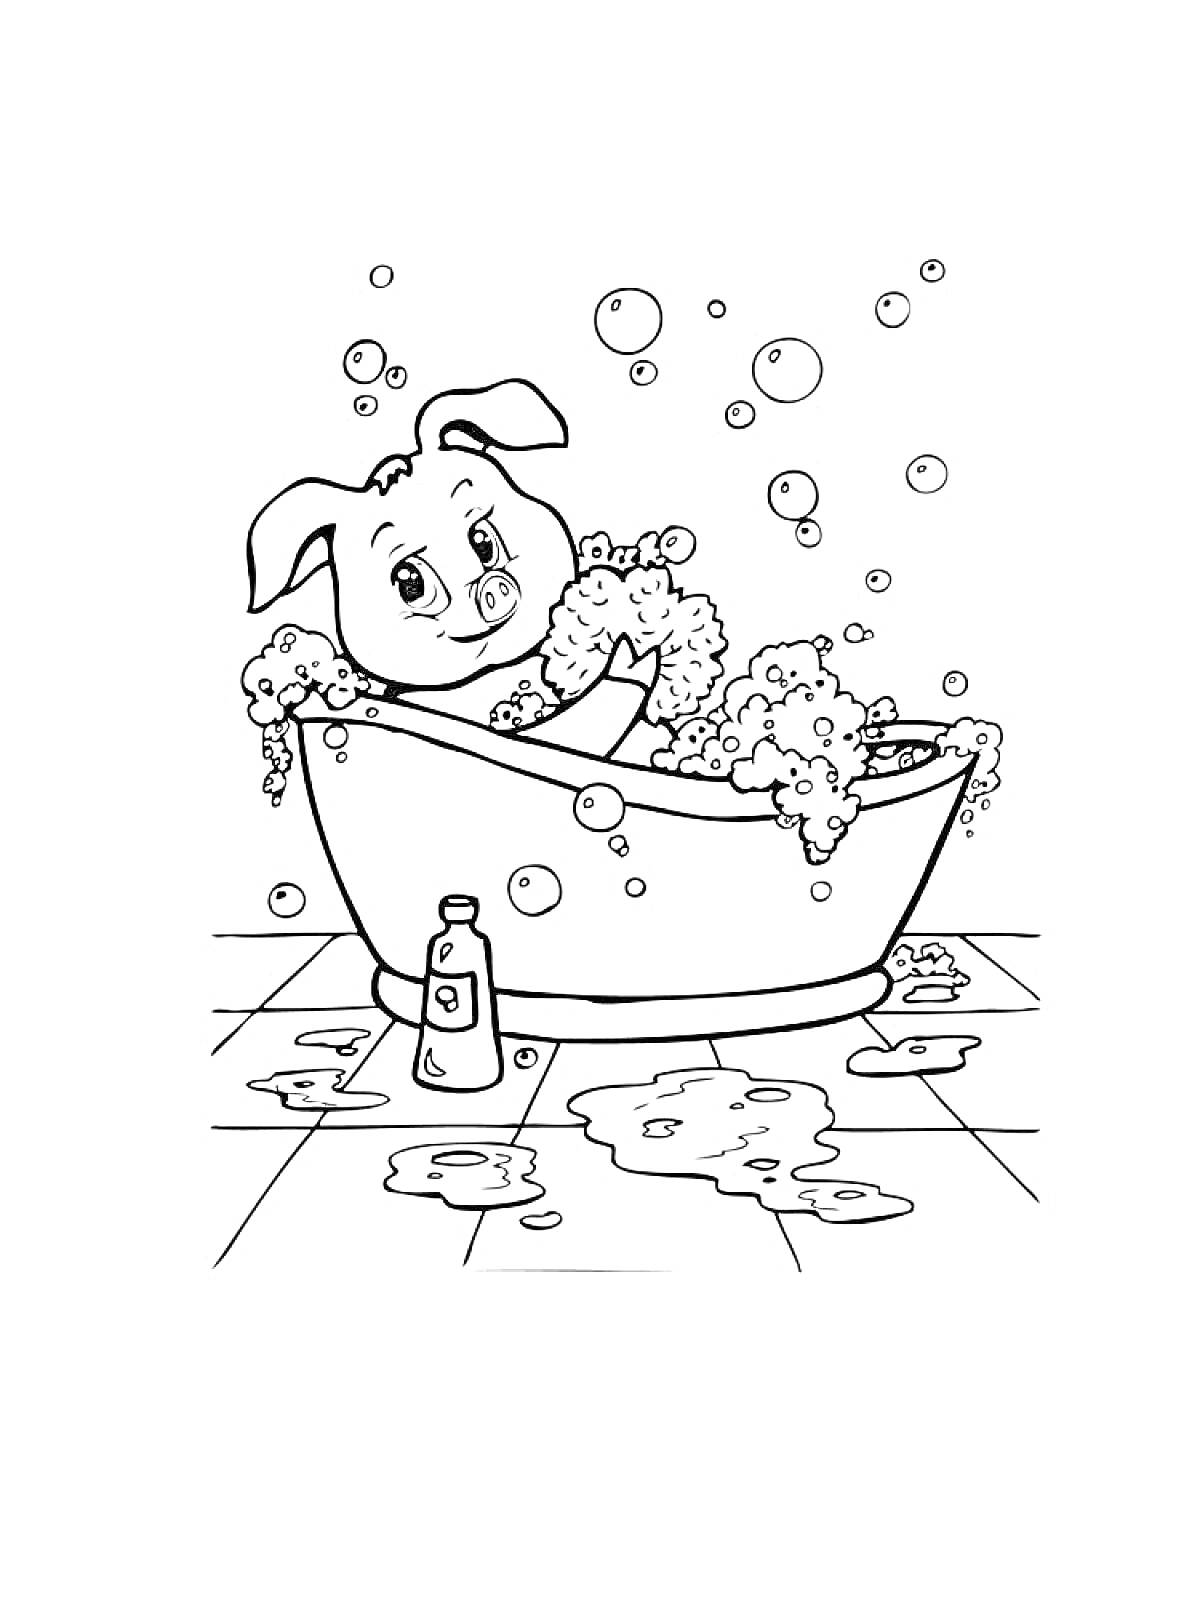 Раскраска Щенок в ванной с пеной, на полу бутылочка и лужи воды